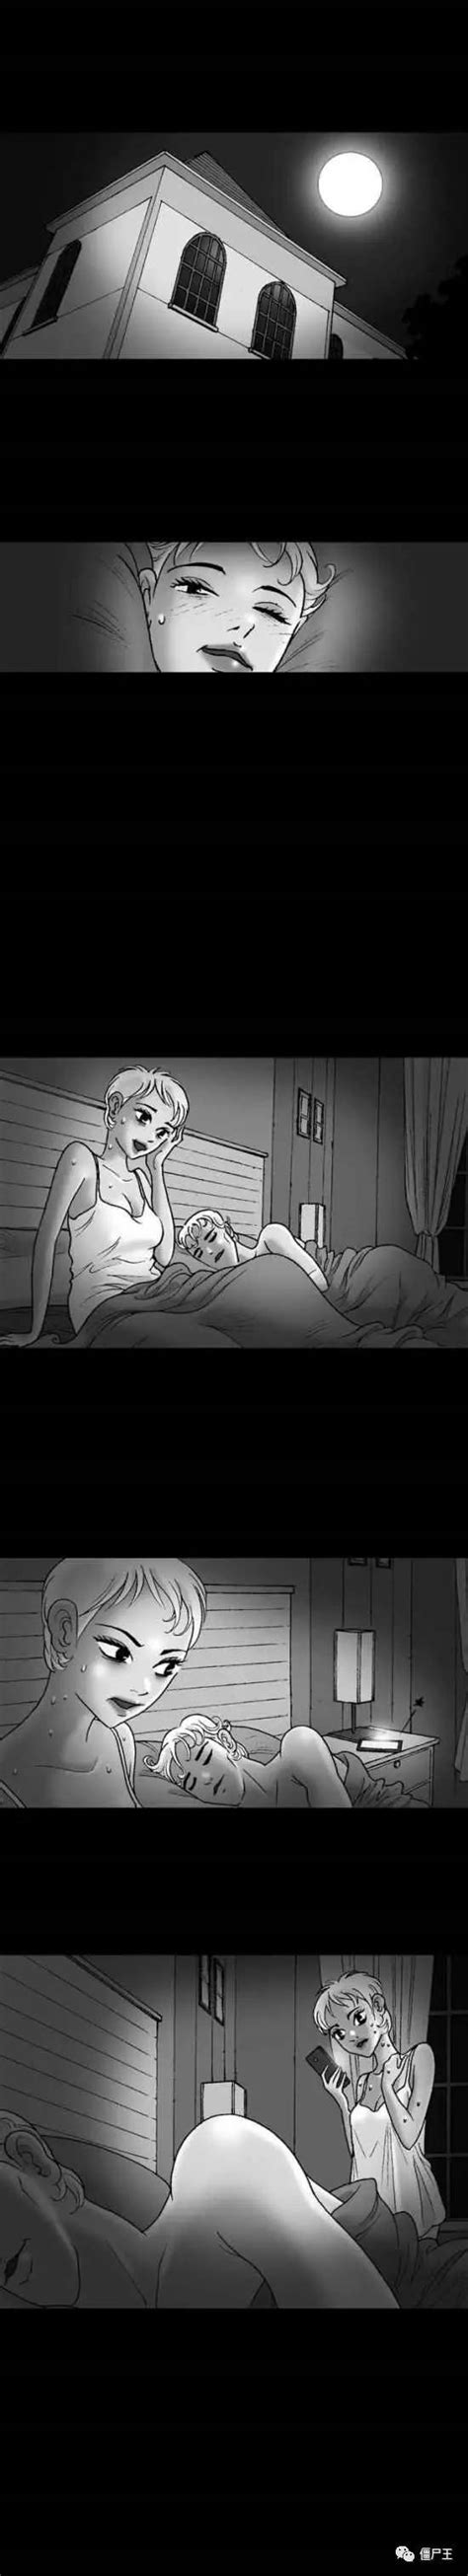 恐怖漫画：无声惊恐《花花公子》-僵尸王 - 360娱乐，你开心就好